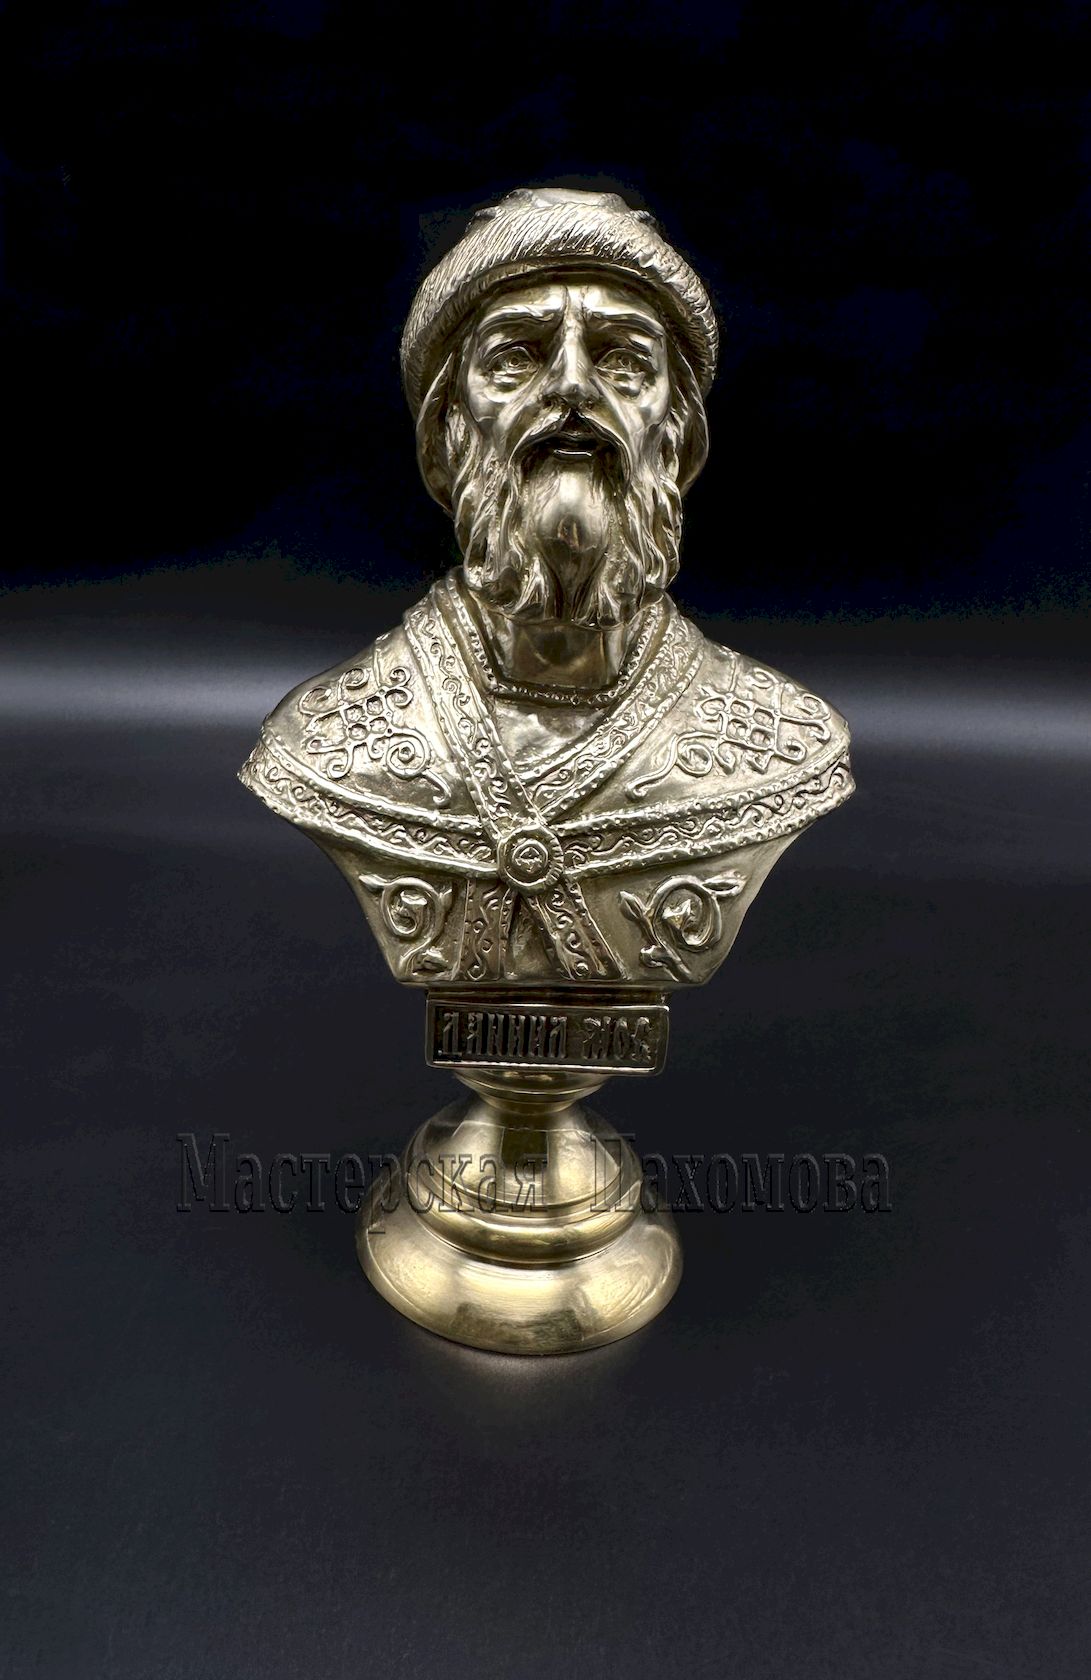 Даниил Московский - бюст из бронзы, изготовлен в мастерской Пахомова